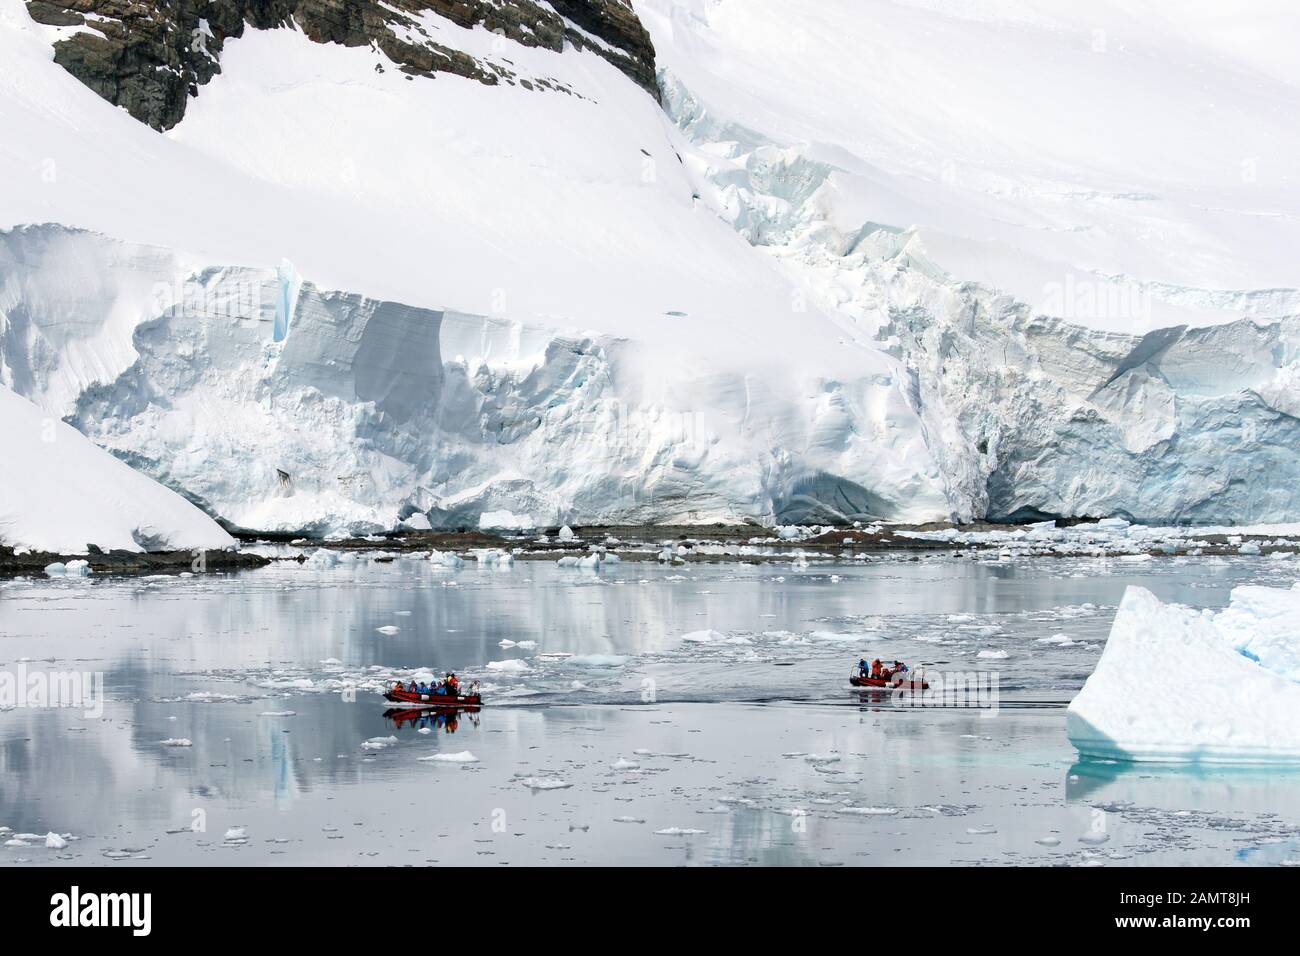 Antarktis. Touristen in kleinen Landungsbooten in der Nähe eines kleinen Gletschers. Nicht identifizierbare Personen. Stockfoto